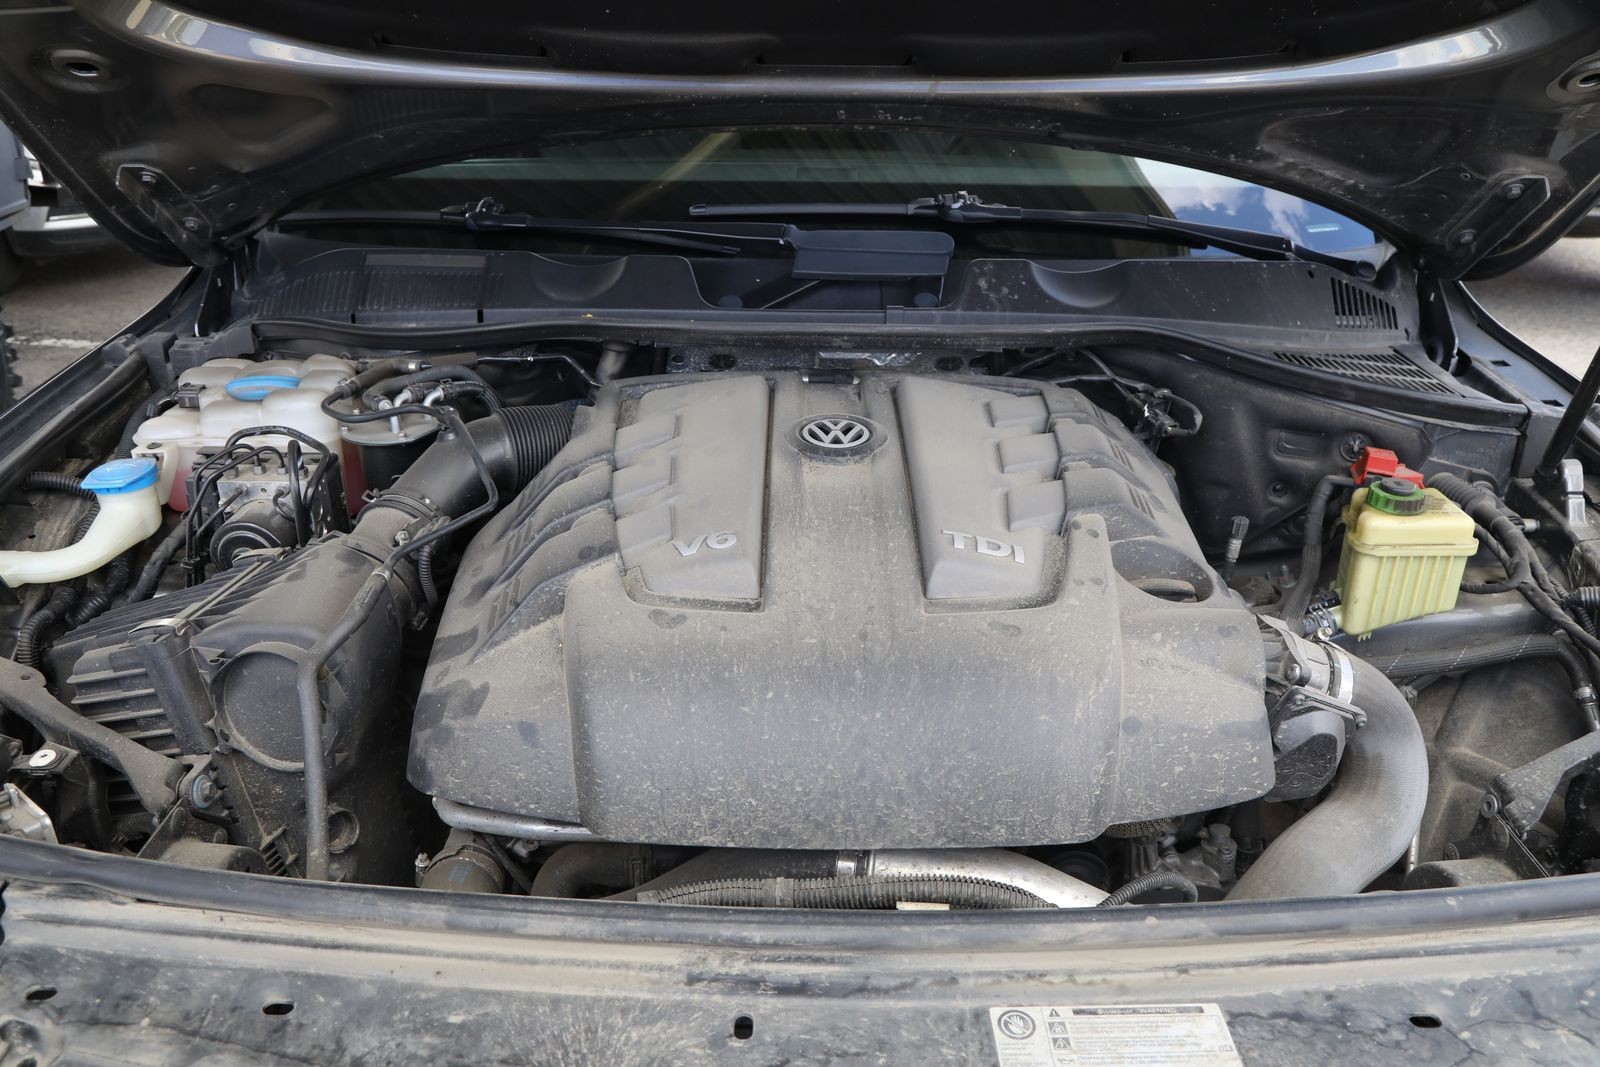 Тест-драйв Volkswagen Touareg второго поколения